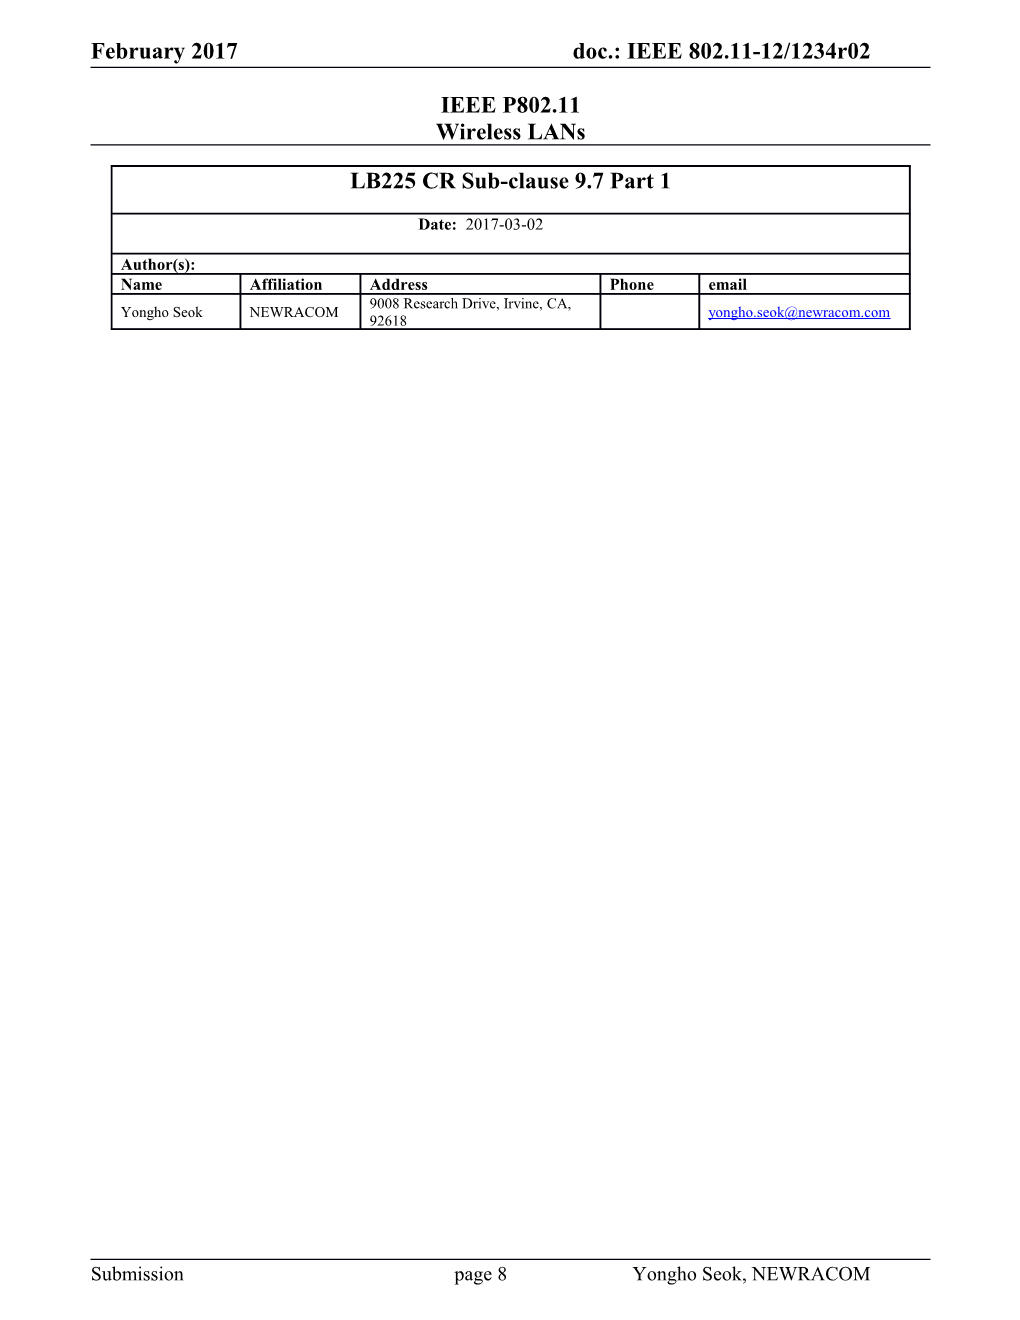 IEEE P802.11 Wireless Lans s94